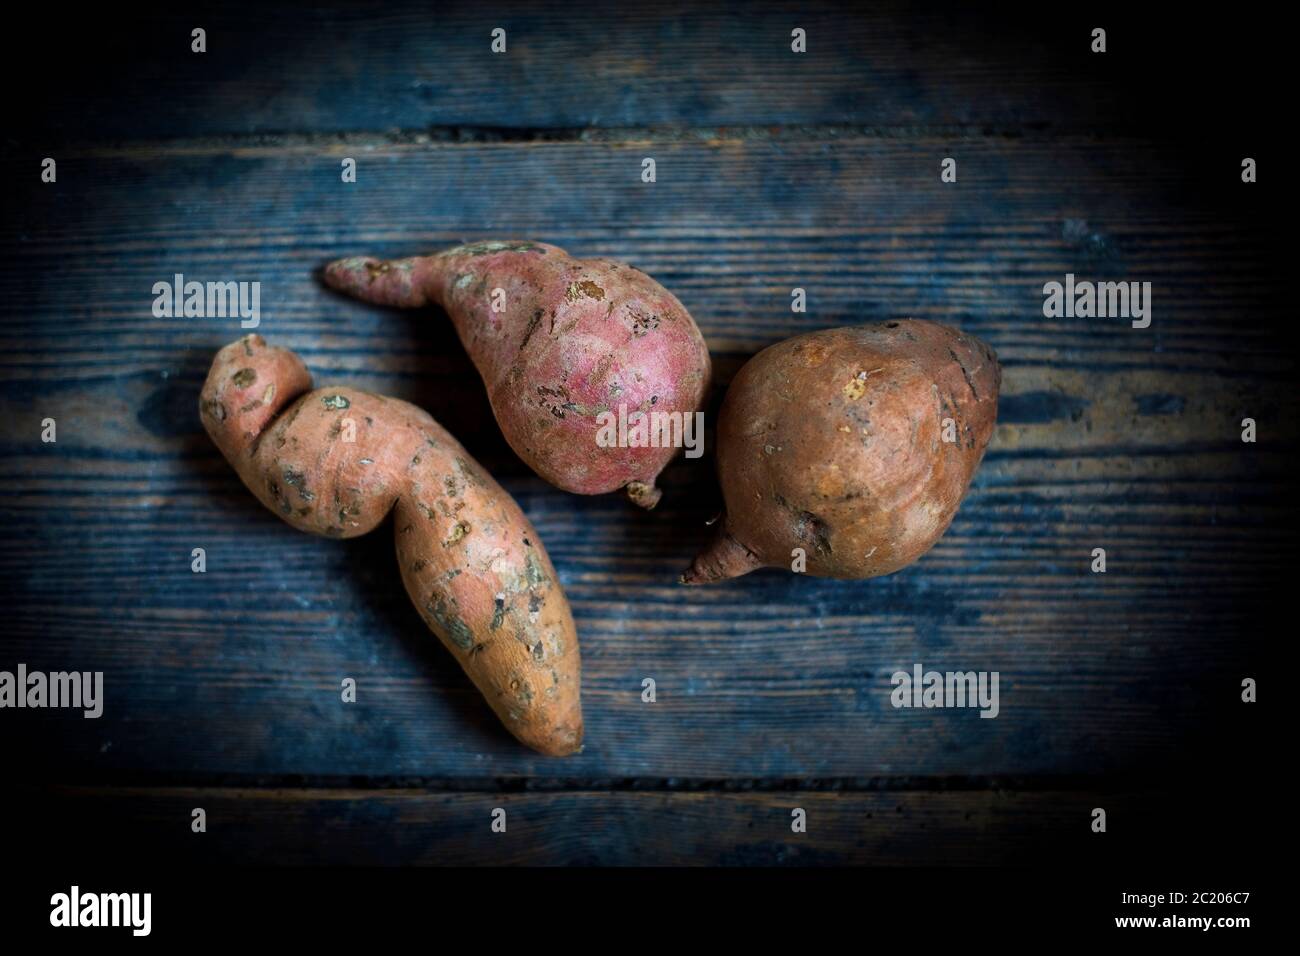 batatas crudas sobre una tabla de madera azul oscuro Foto de stock